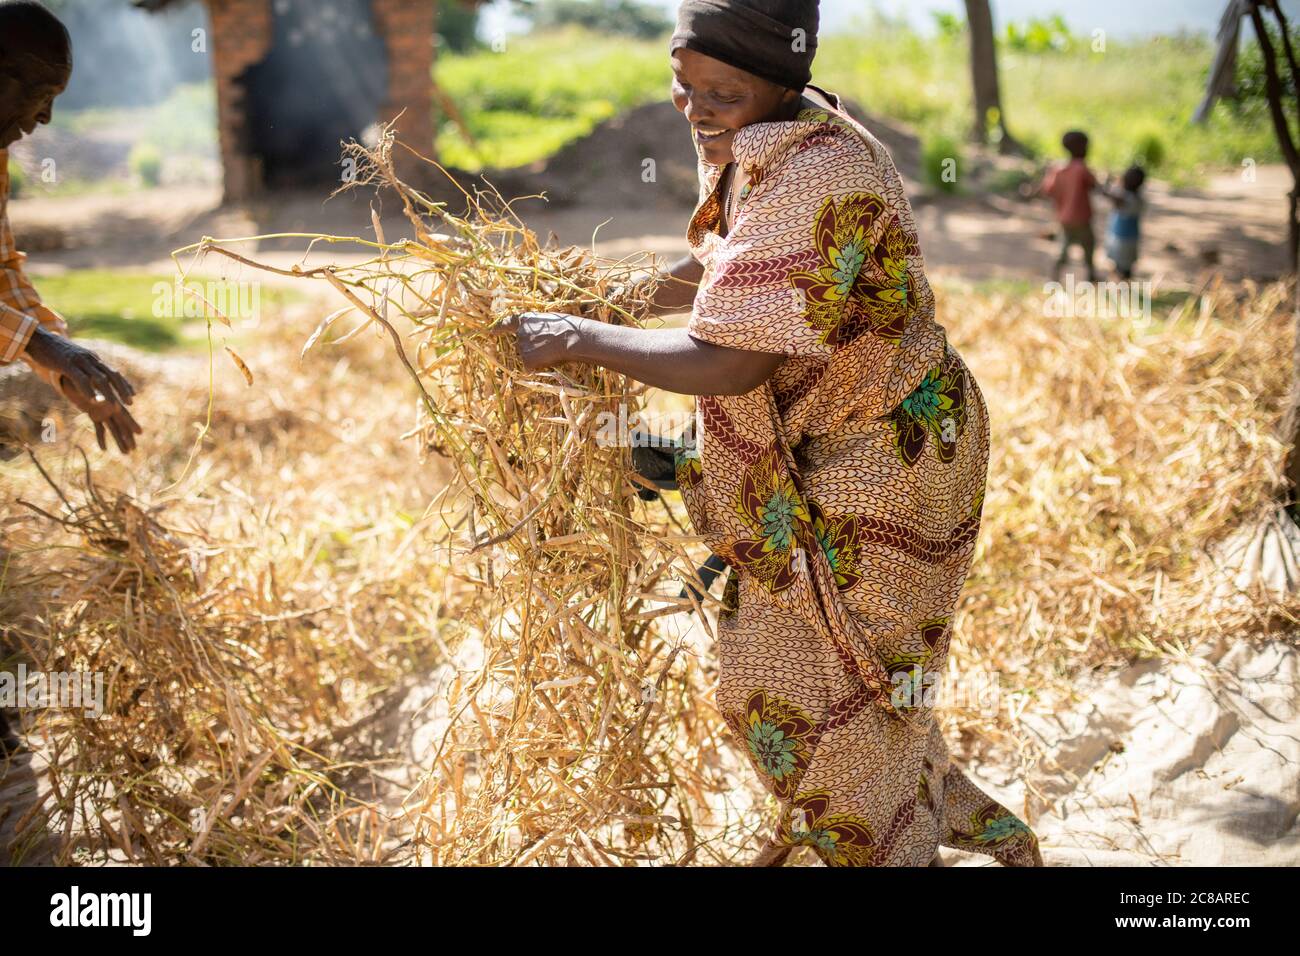 Une femme paysanne répand sa récolte de haricots frais pour sécher au soleil du matin avant de les retirer de leurs gousses dans le district de Lyantonde, en Ouganda. Banque D'Images